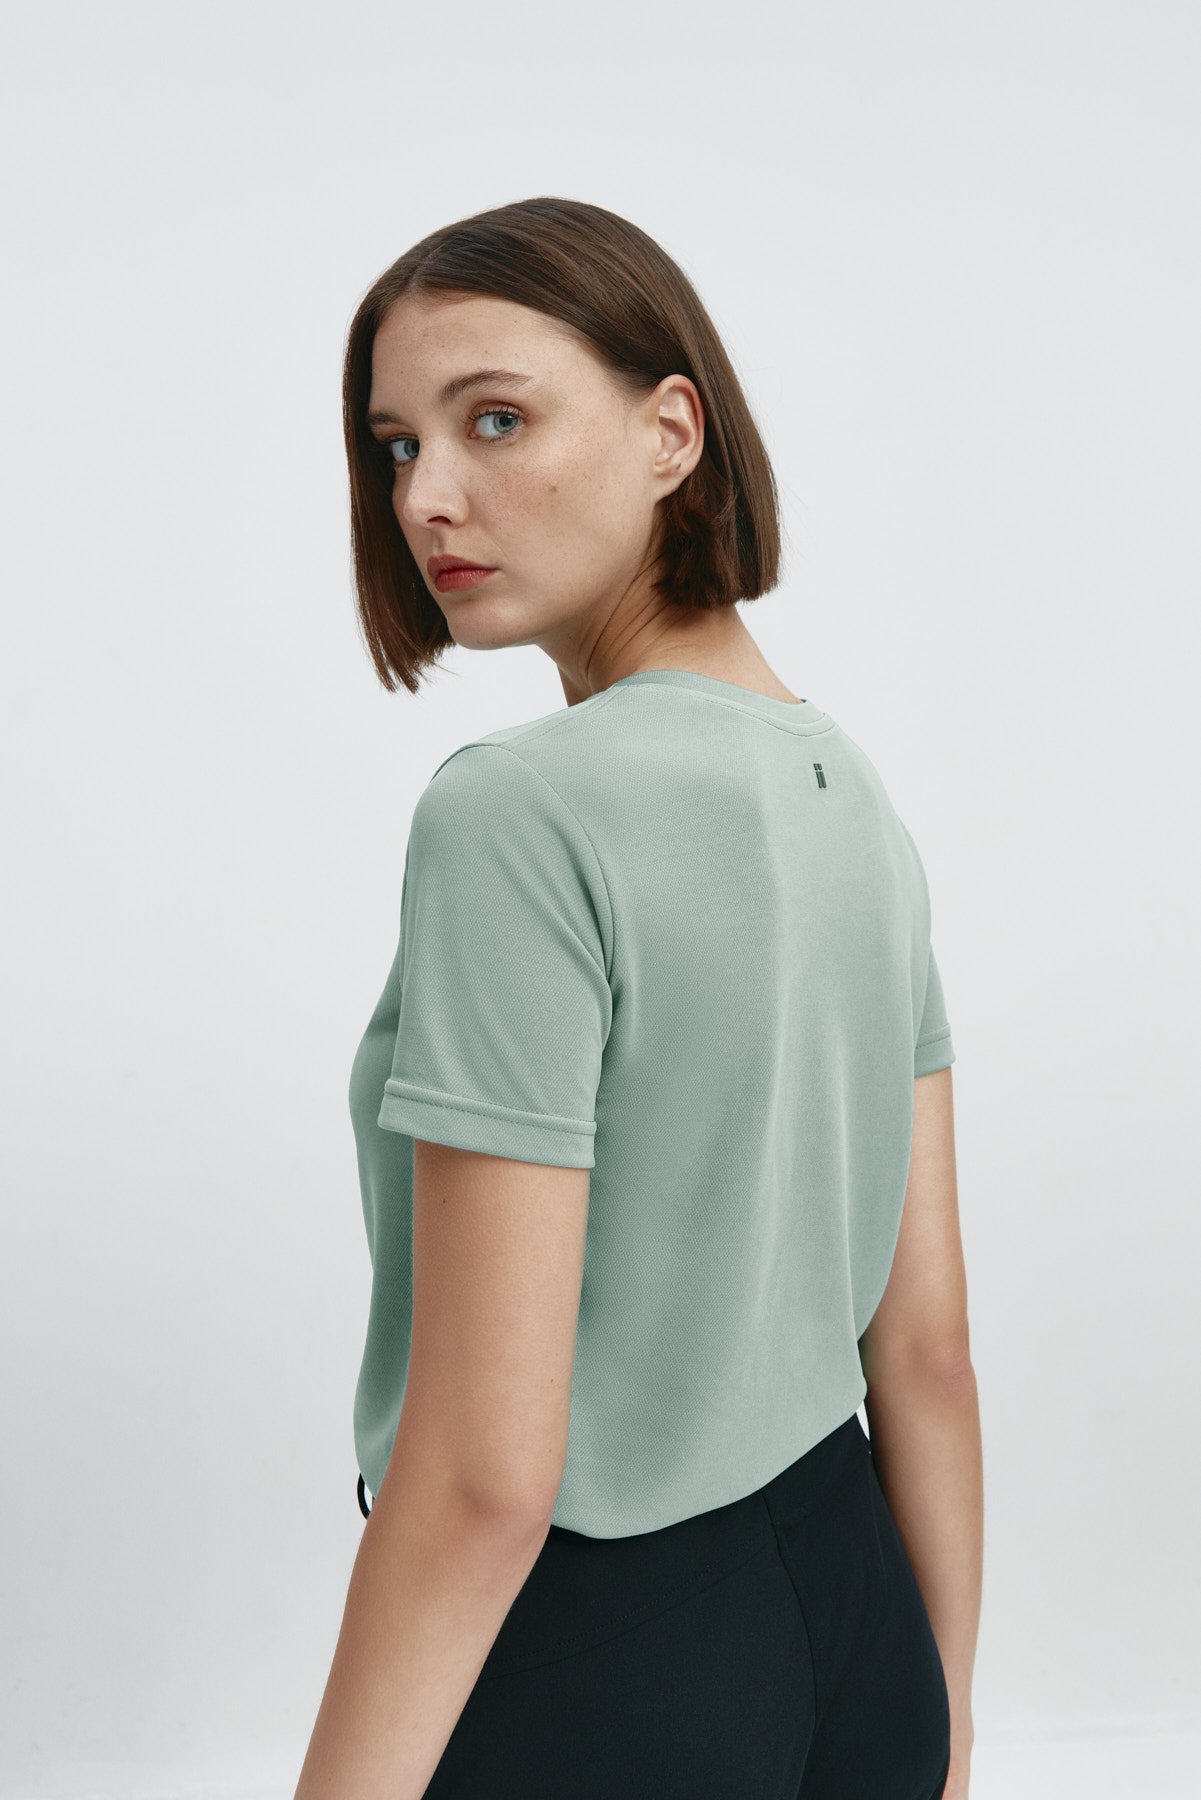 Camiseta básica de mujer verde cuarzo de manga corta y cuello redondo, perfecta para cualquier look. Foto espalda